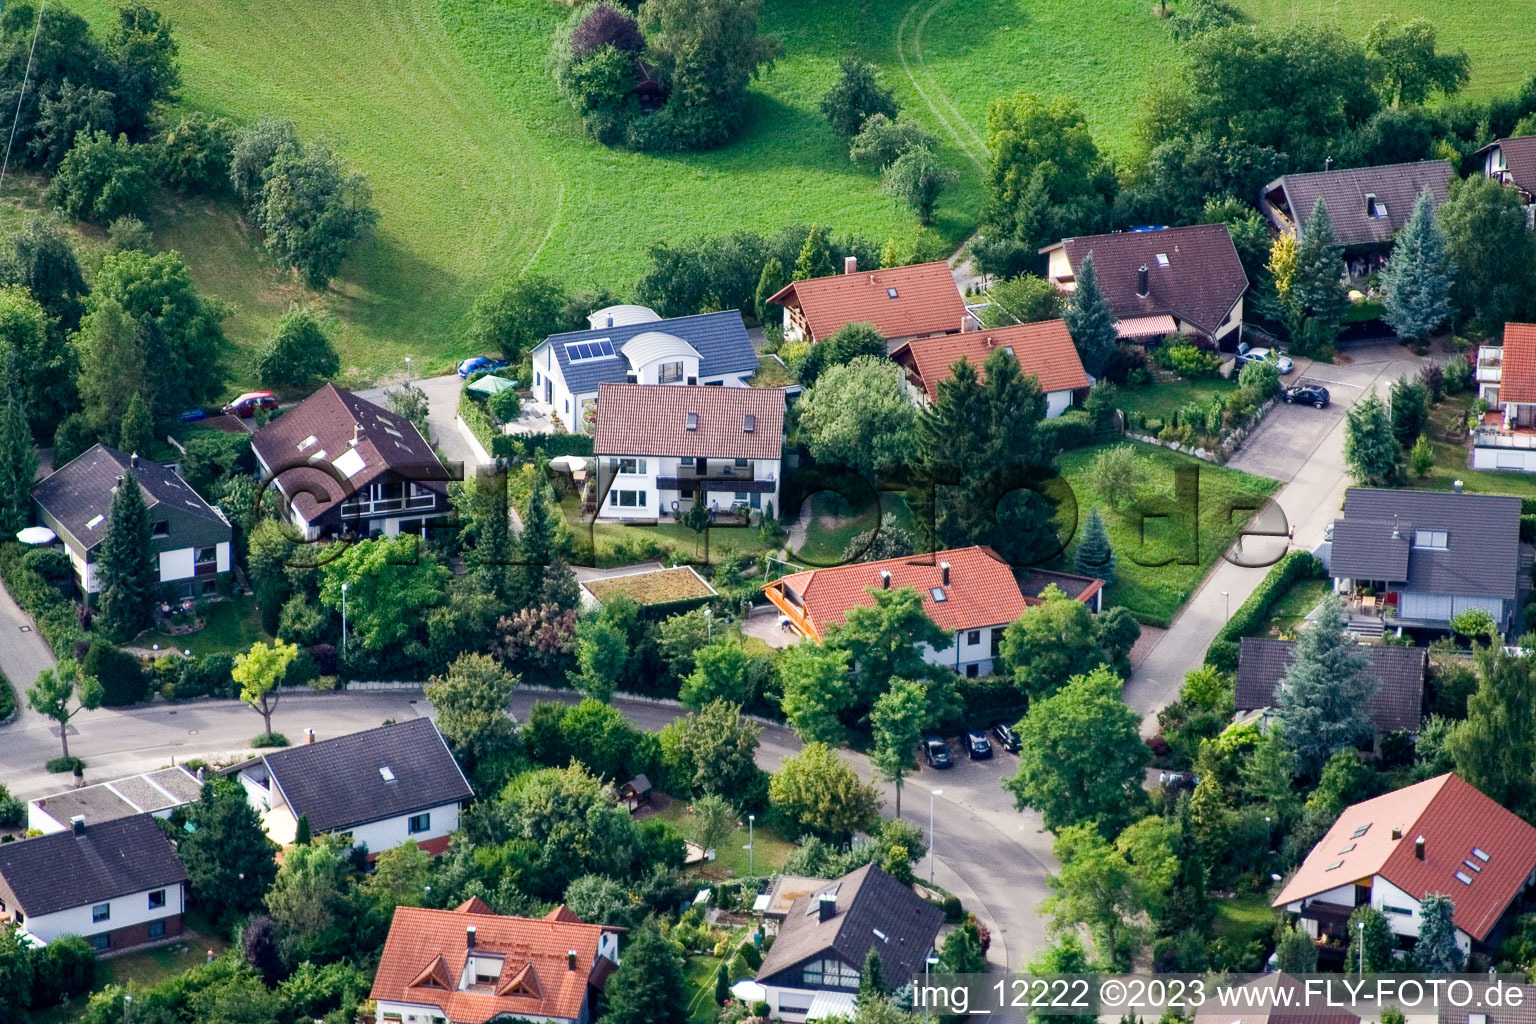 Ehbühl, Kirchhalde à Herrenberg dans le département Bade-Wurtemberg, Allemagne hors des airs